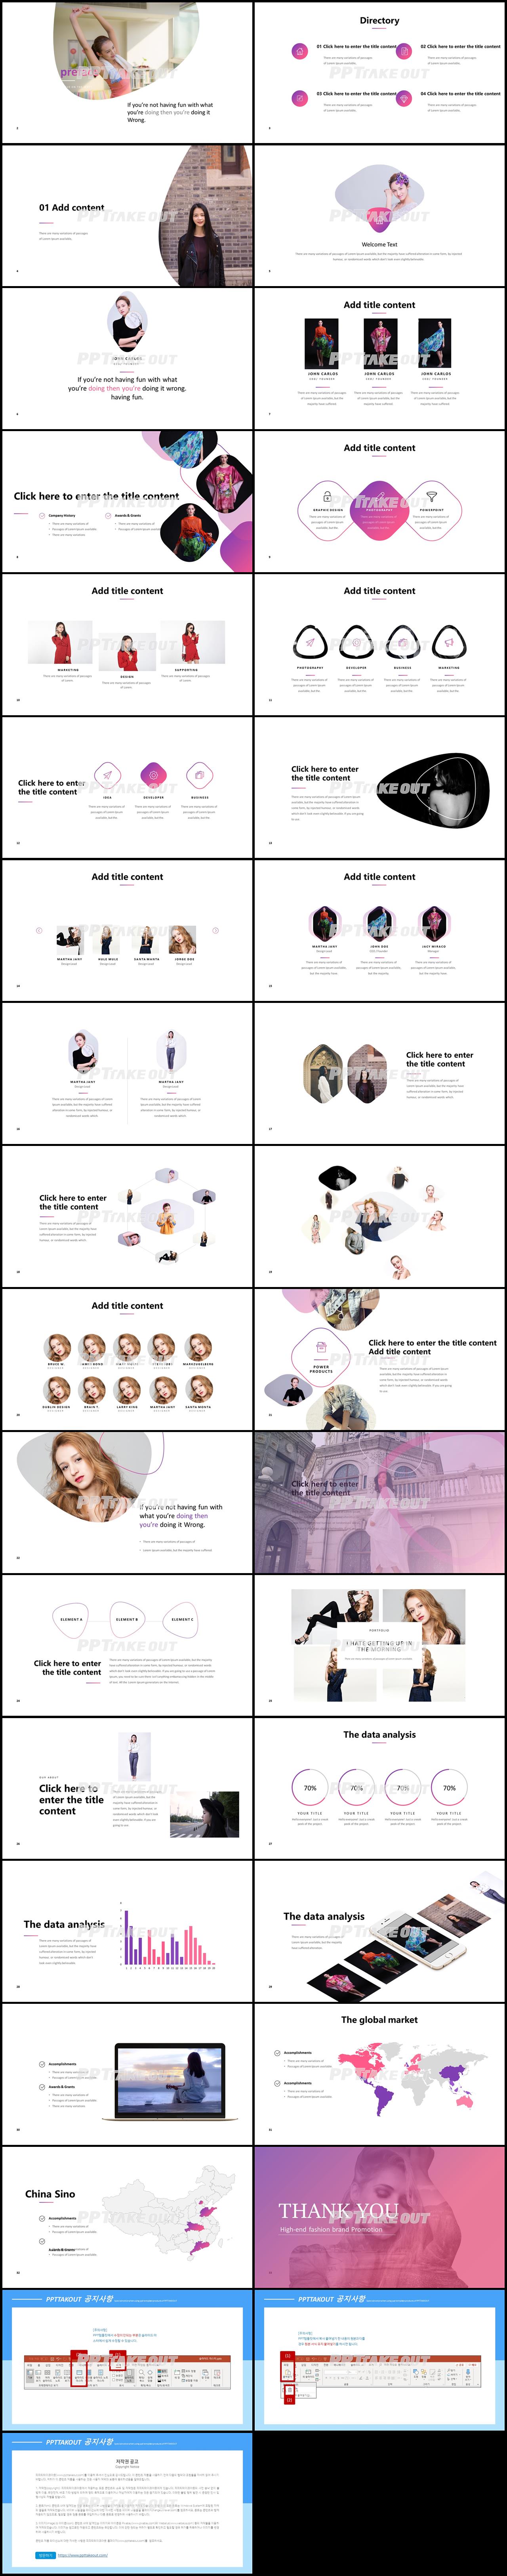 패션, 미용주제 핑크색 폼나는 고급스럽운 피피티템플릿 사이트 상세보기